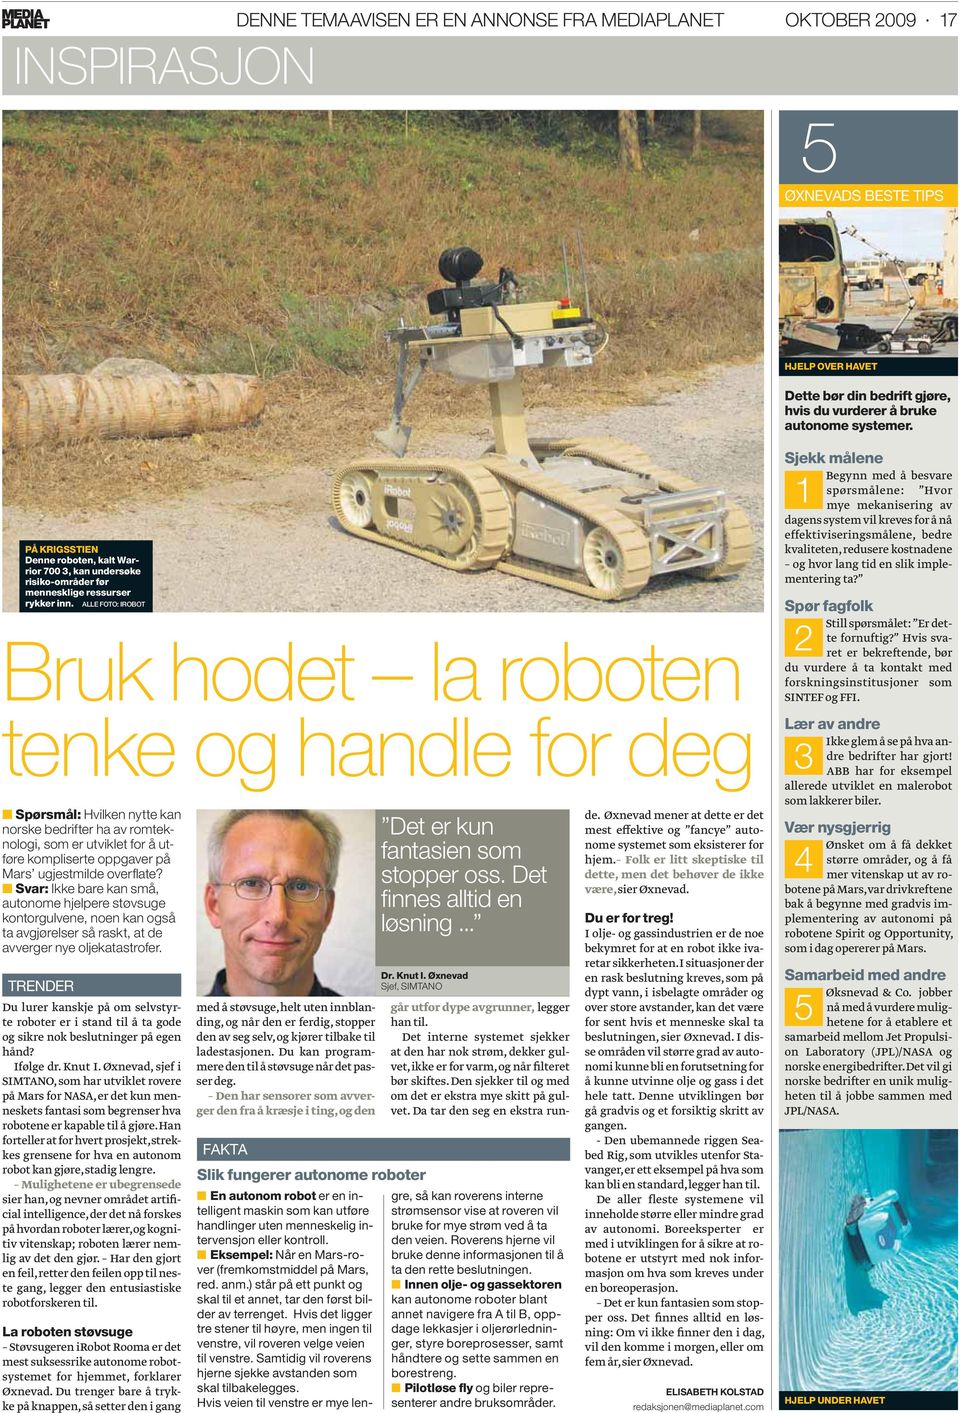 ALLE FOTO: IROBOT Bruk hodet la roboten tenke og handle for deg Spørsmål: Hvilken nytte kan norske bedrifter ha av romteknologi, som er utviklet for å utføre kompliserte oppgaver på Mars ugjestmilde